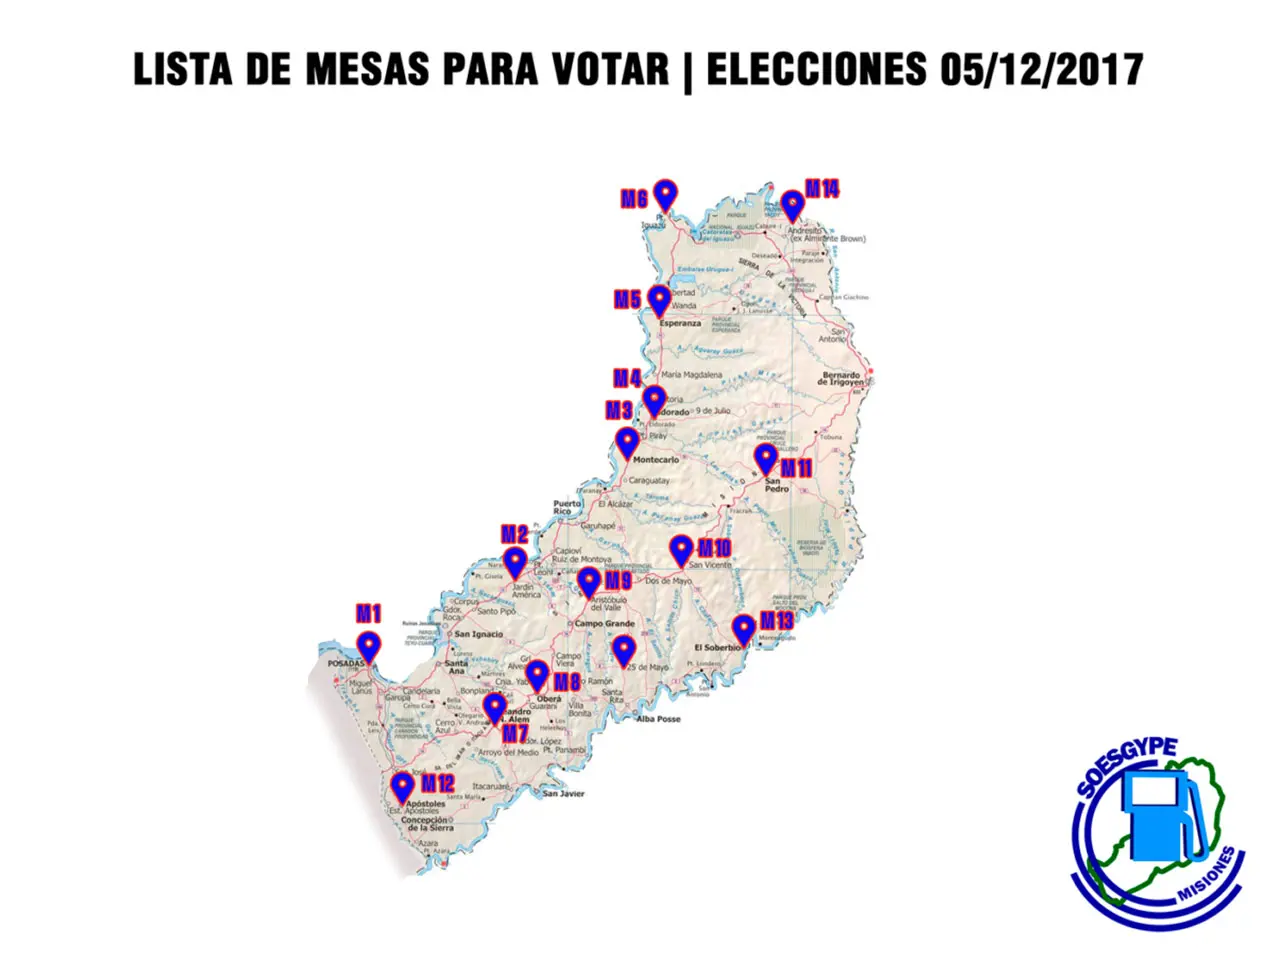 Mesas donde se vota en las elecciones del SOESGyPE Misiones